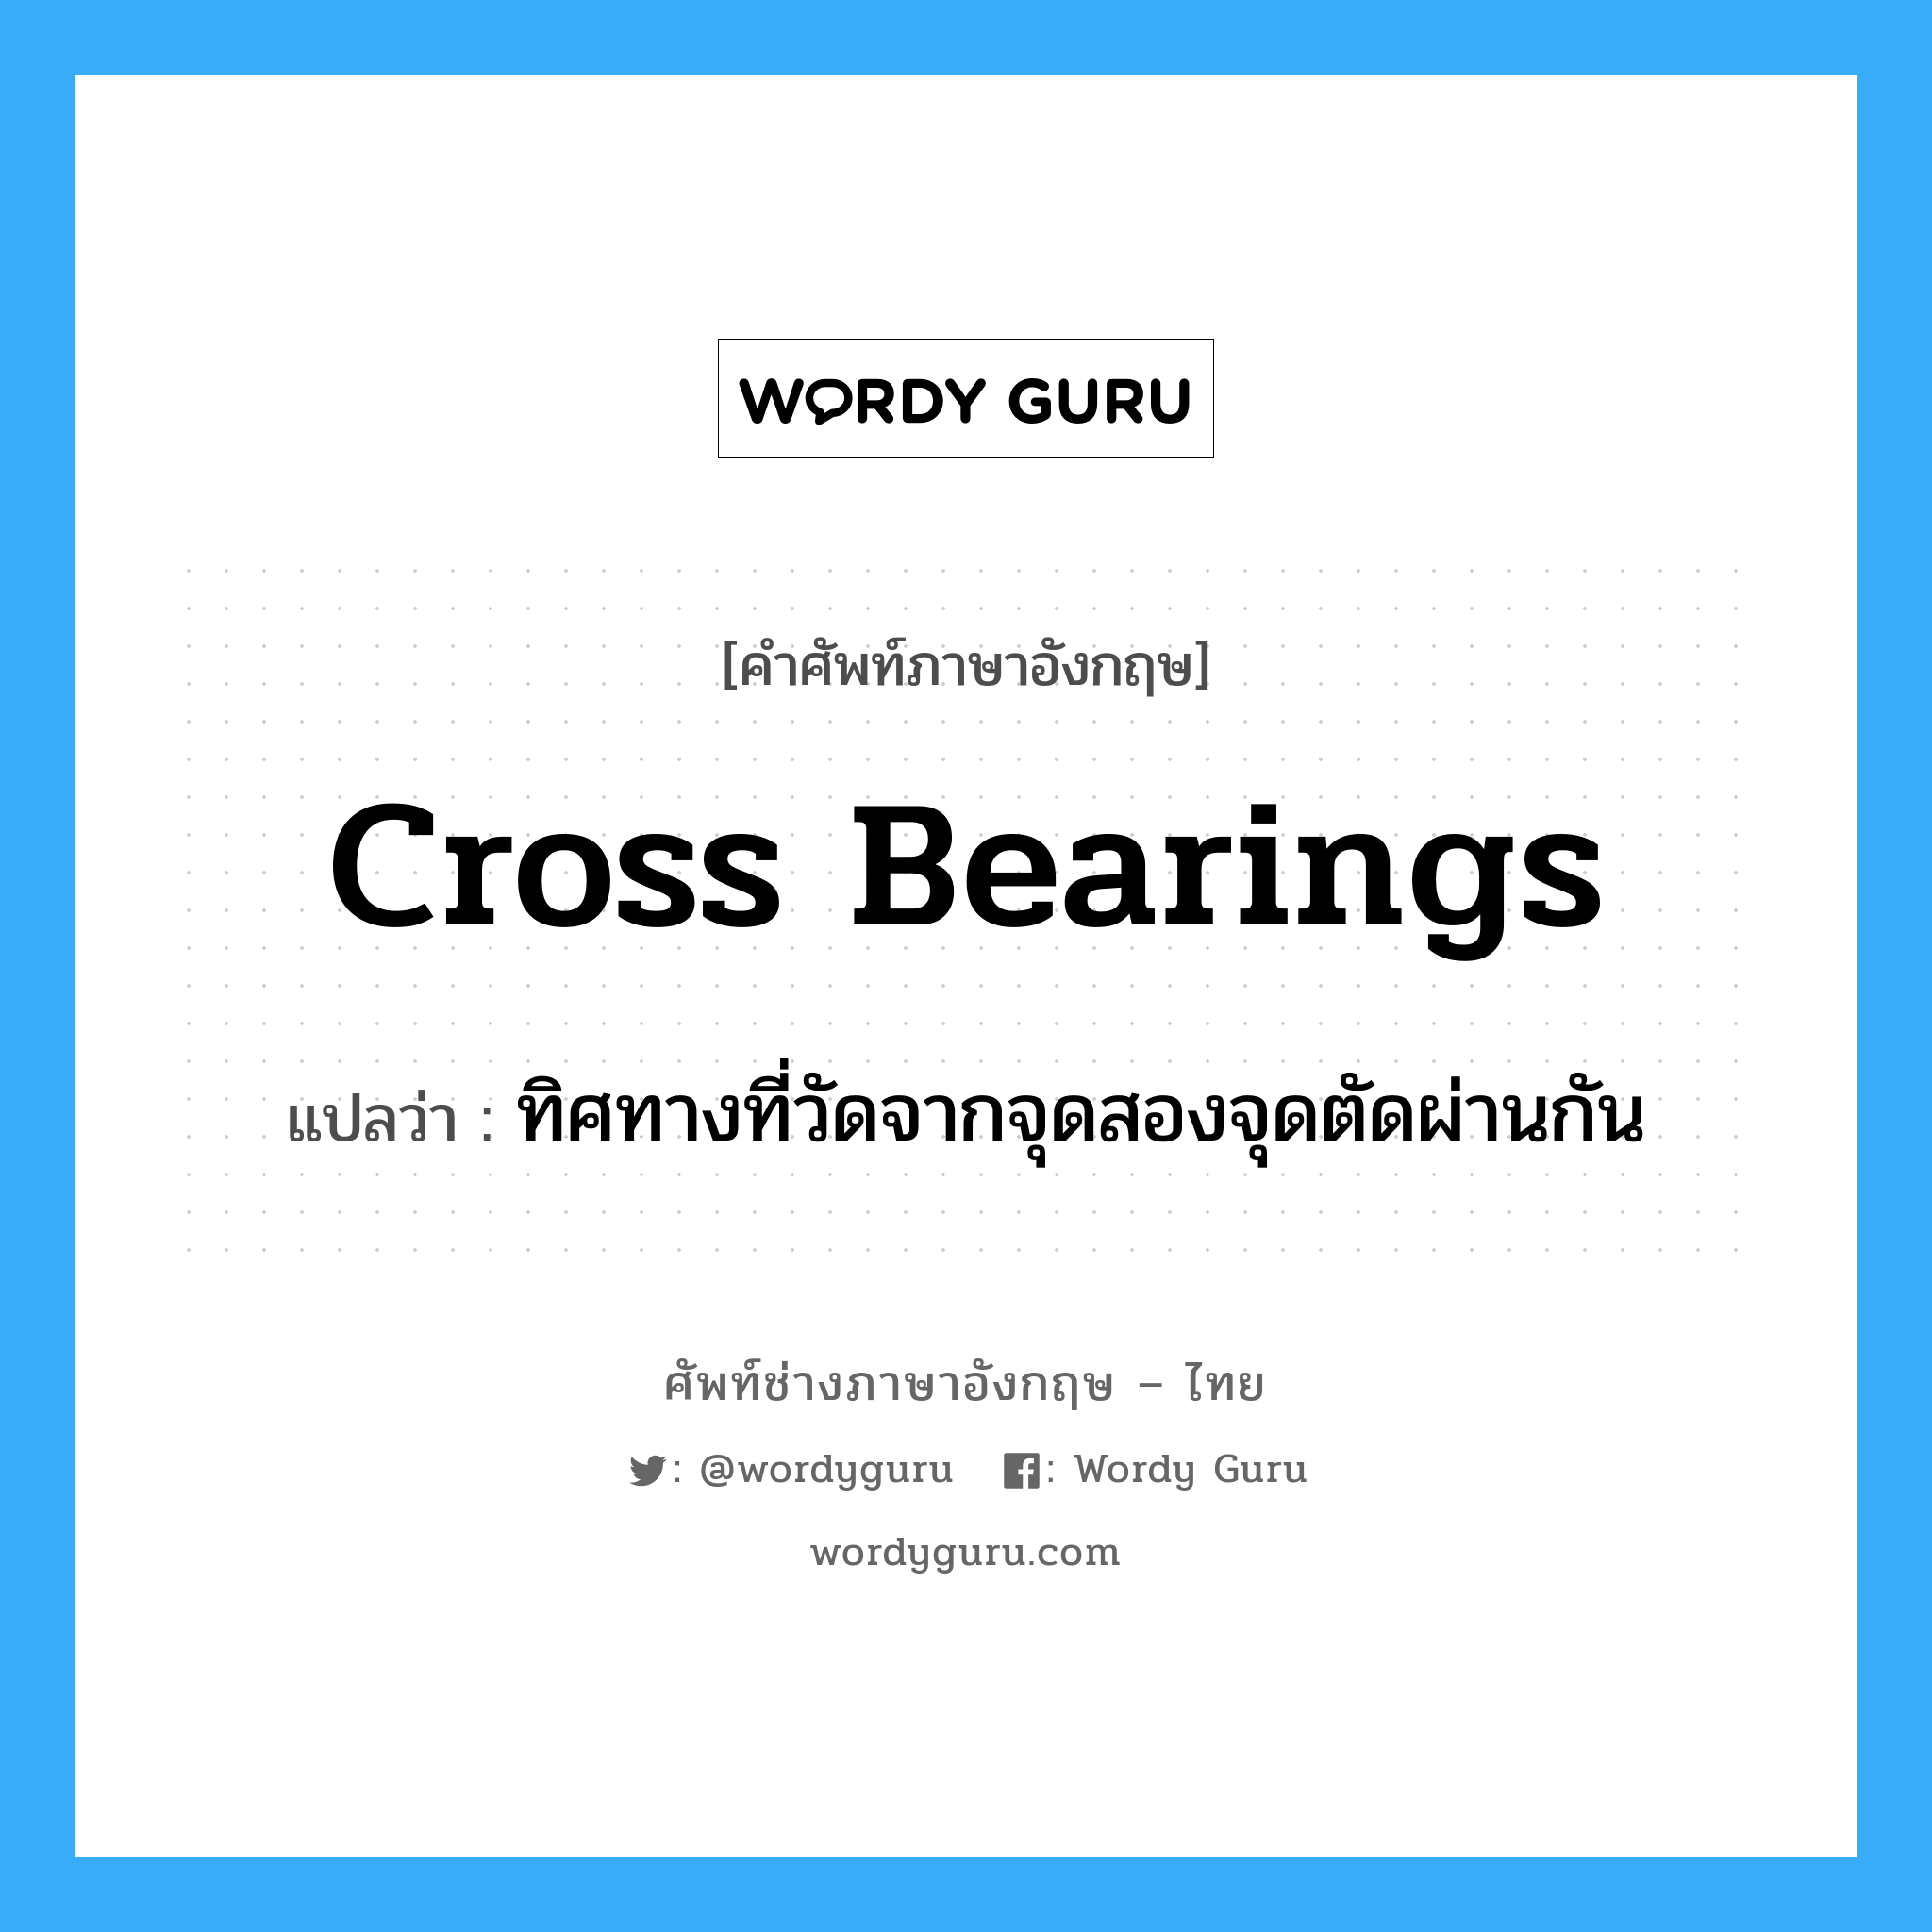 cross bearings แปลว่า?, คำศัพท์ช่างภาษาอังกฤษ - ไทย cross bearings คำศัพท์ภาษาอังกฤษ cross bearings แปลว่า ทิศทางที่วัดจากจุดสองจุดตัดผ่านกัน